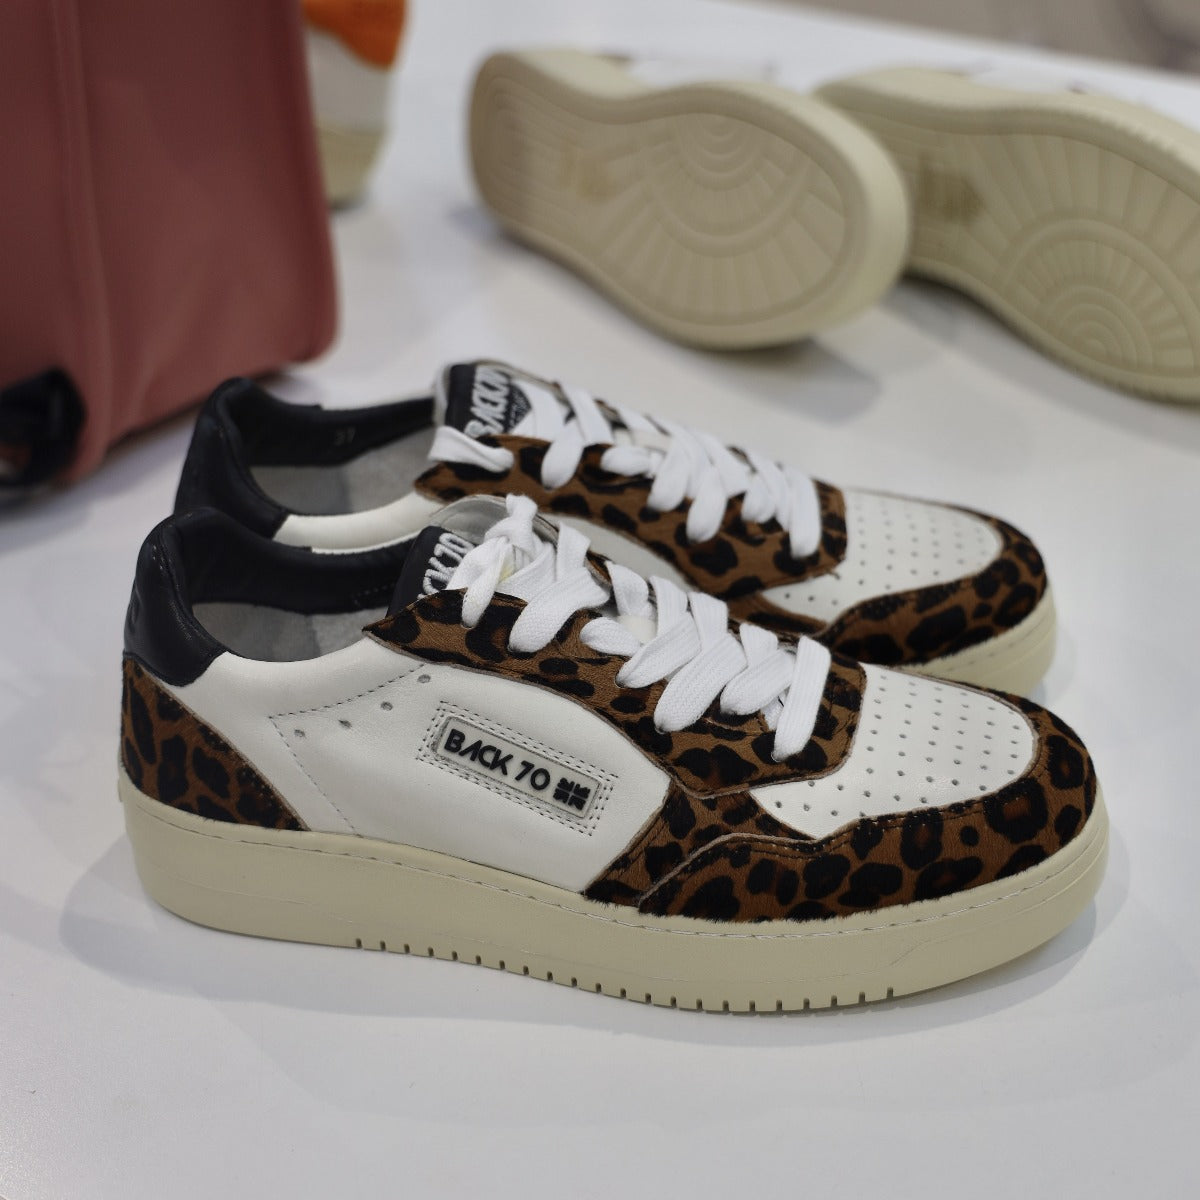 back-70-slamf54-sneaker-donna-rip-leopardo